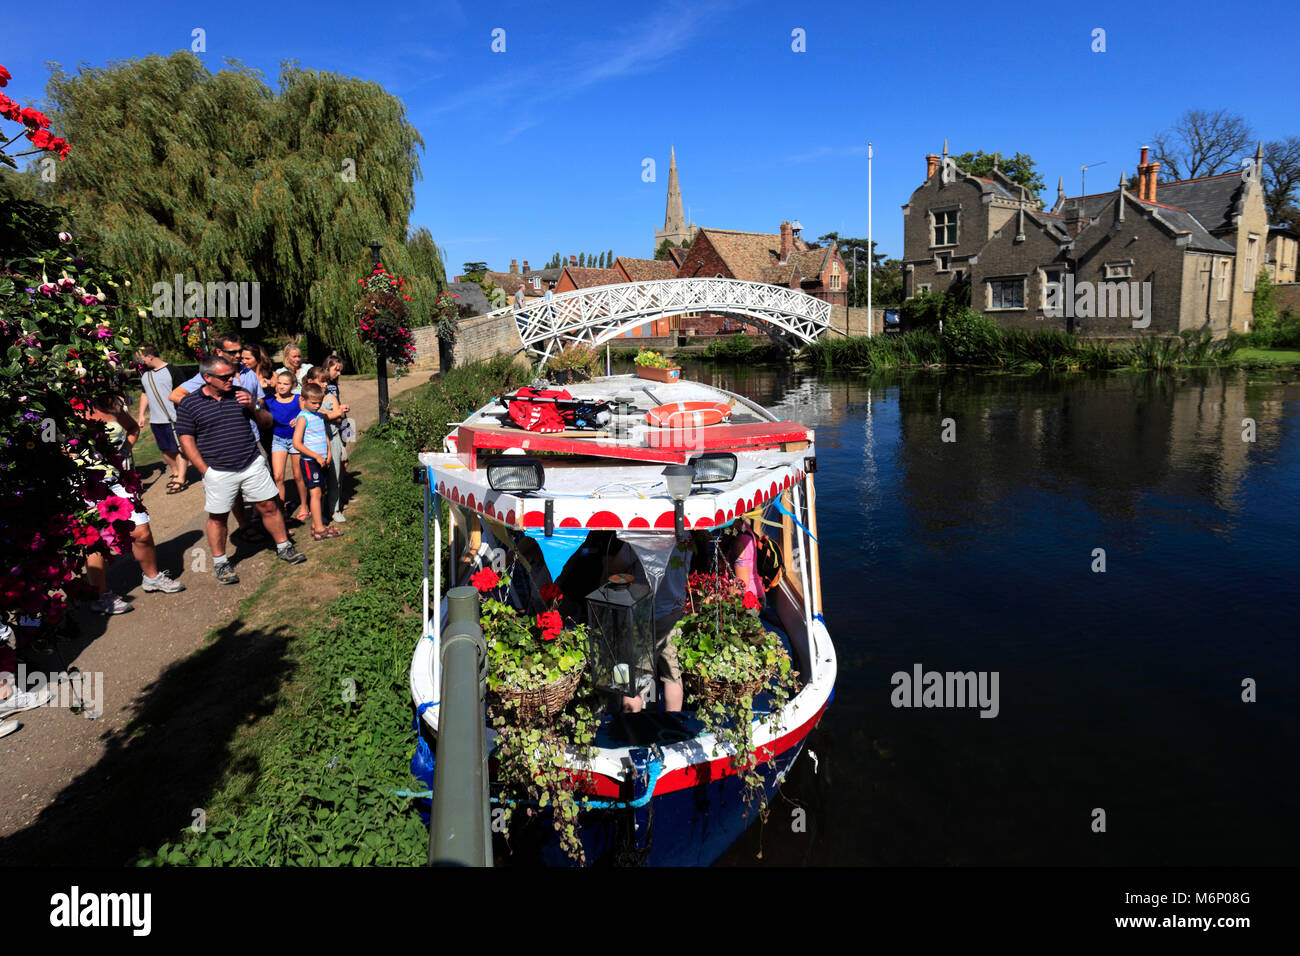 Boote auf dem Fluss Great Ouse, godmanchester Stadt, Cambridgeshire, England, Großbritannien Stockfoto